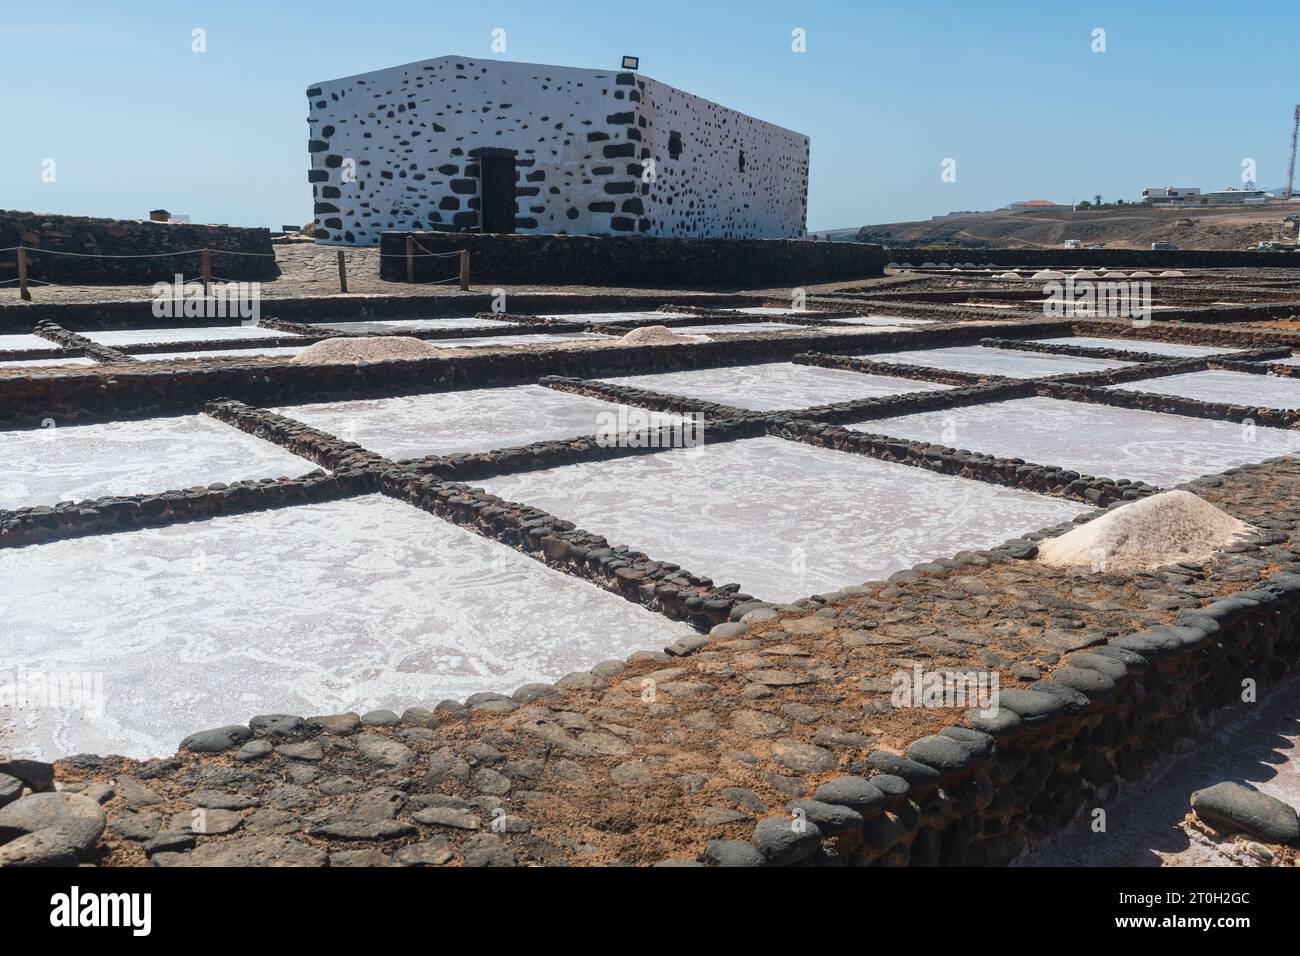 The Salt Museum at El Carmen, Fuerteventur Stock Photo